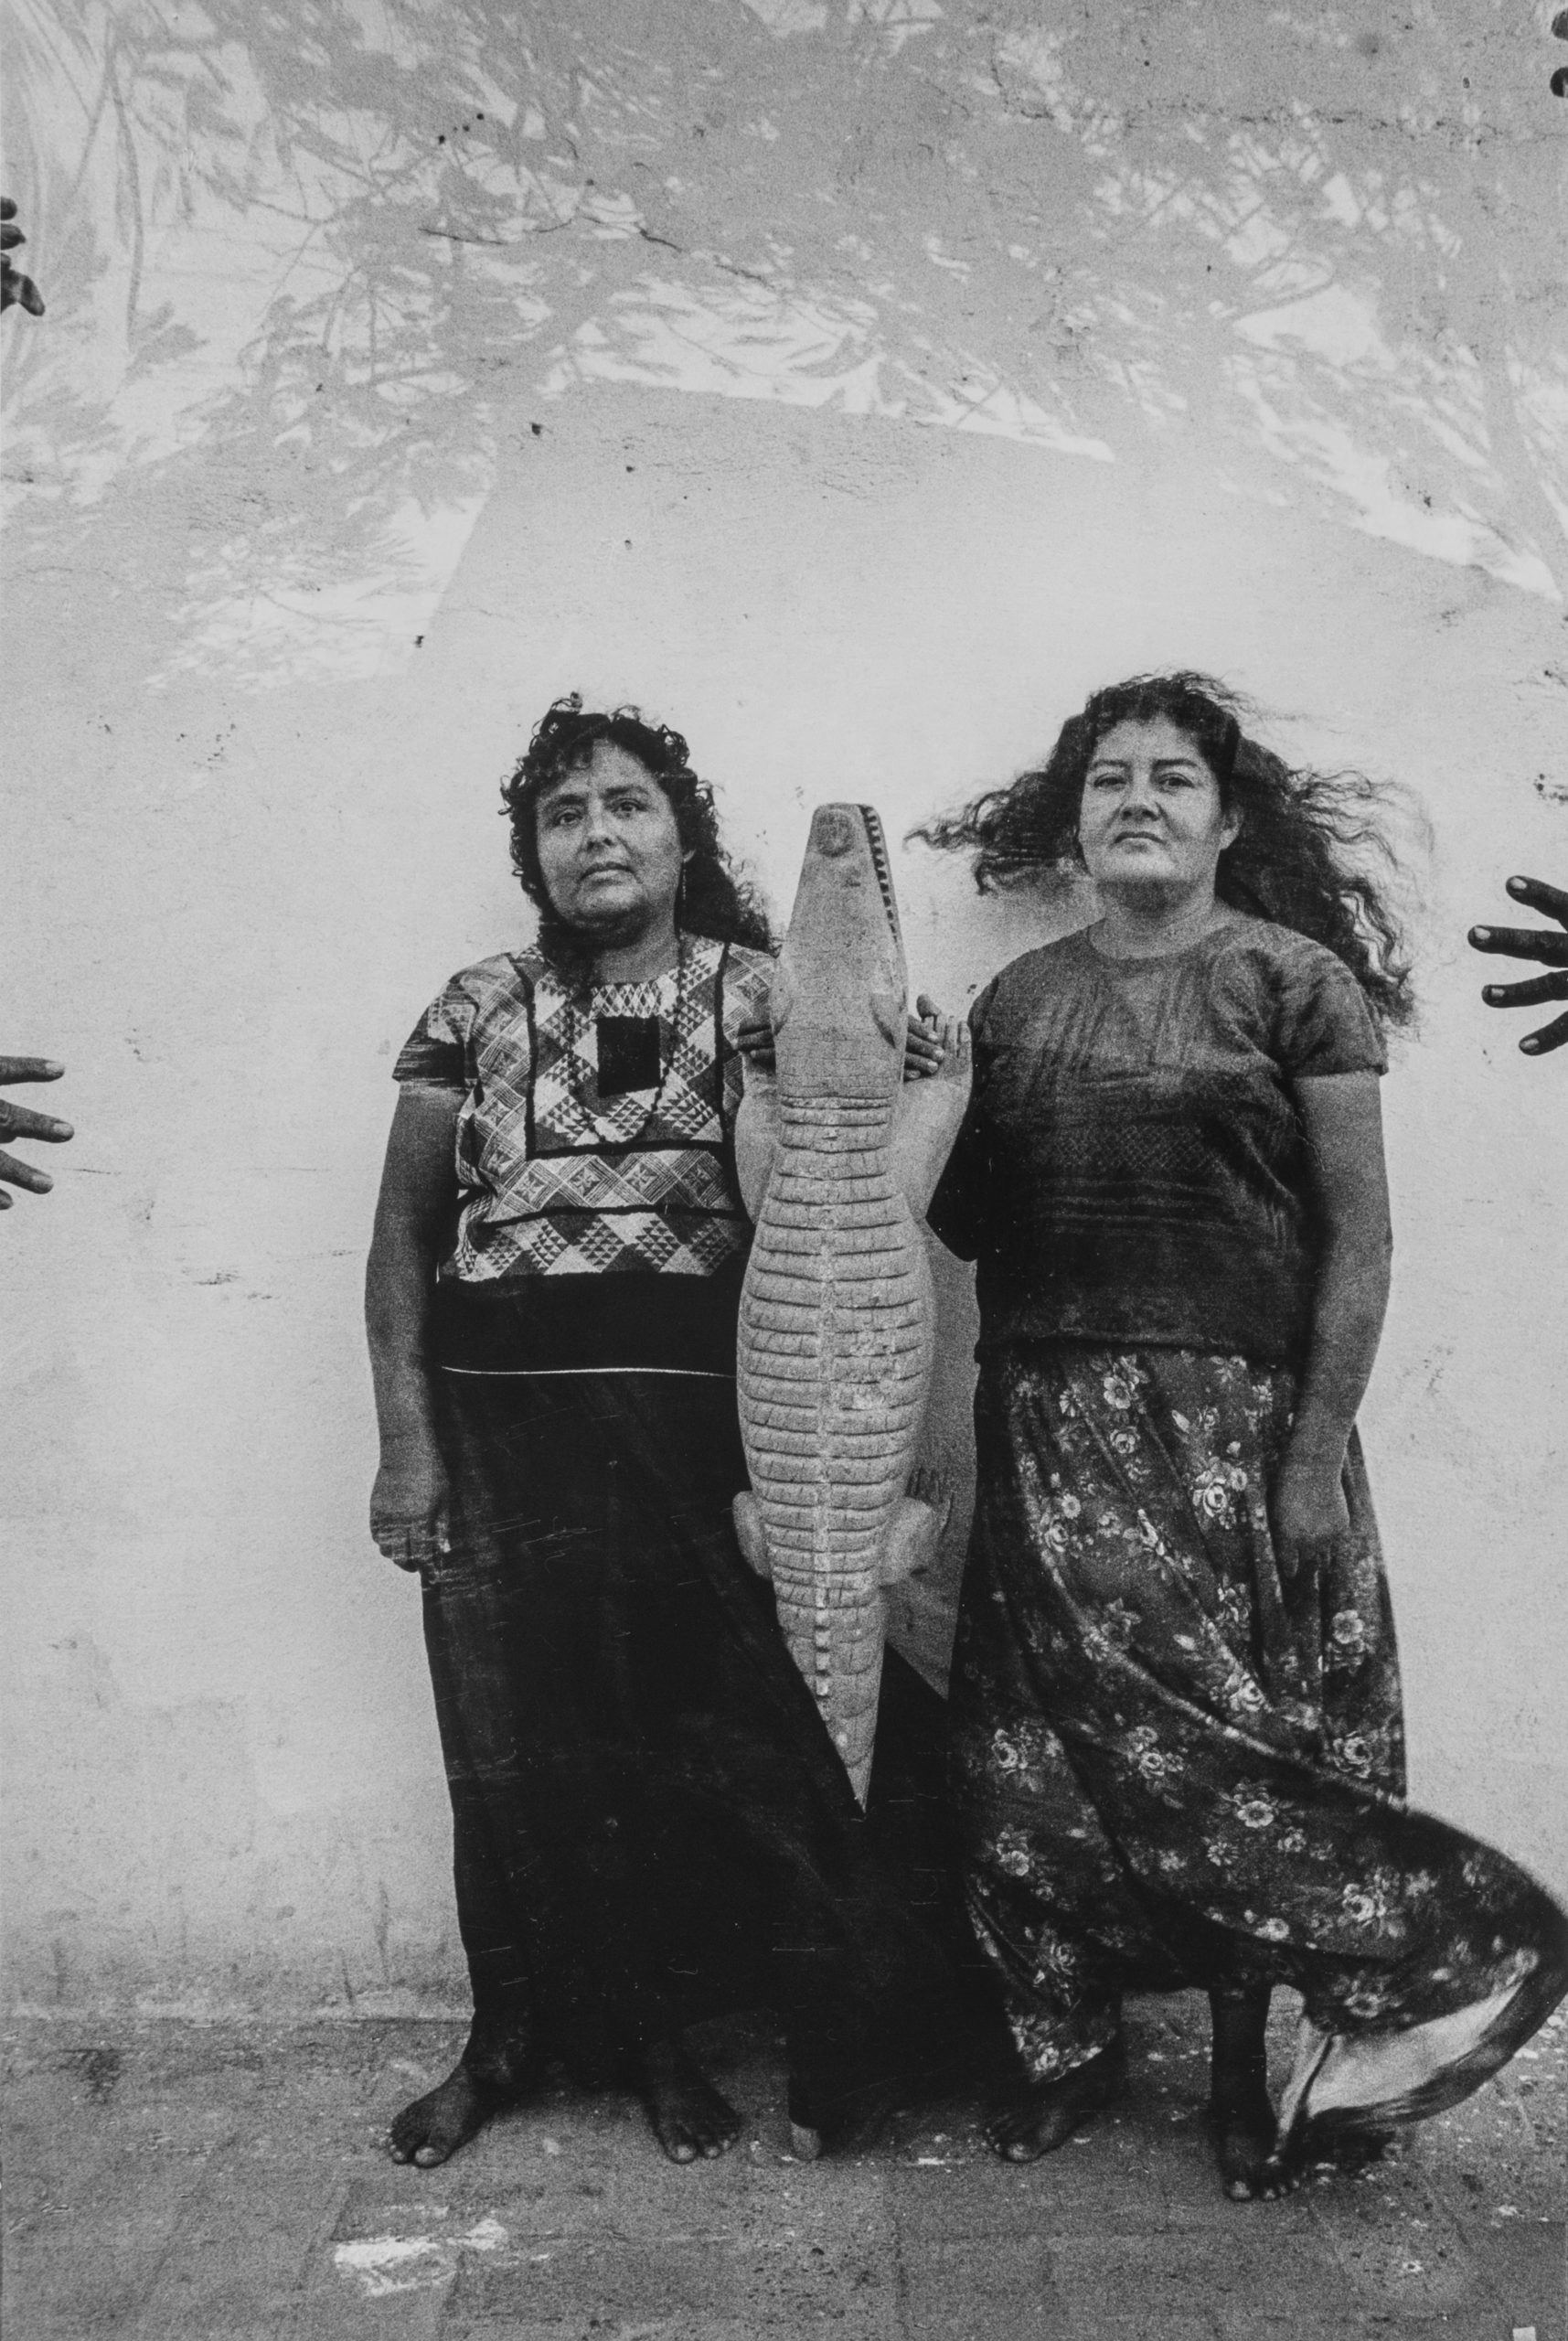 Logarto [Alligator], Juchitán, 1986